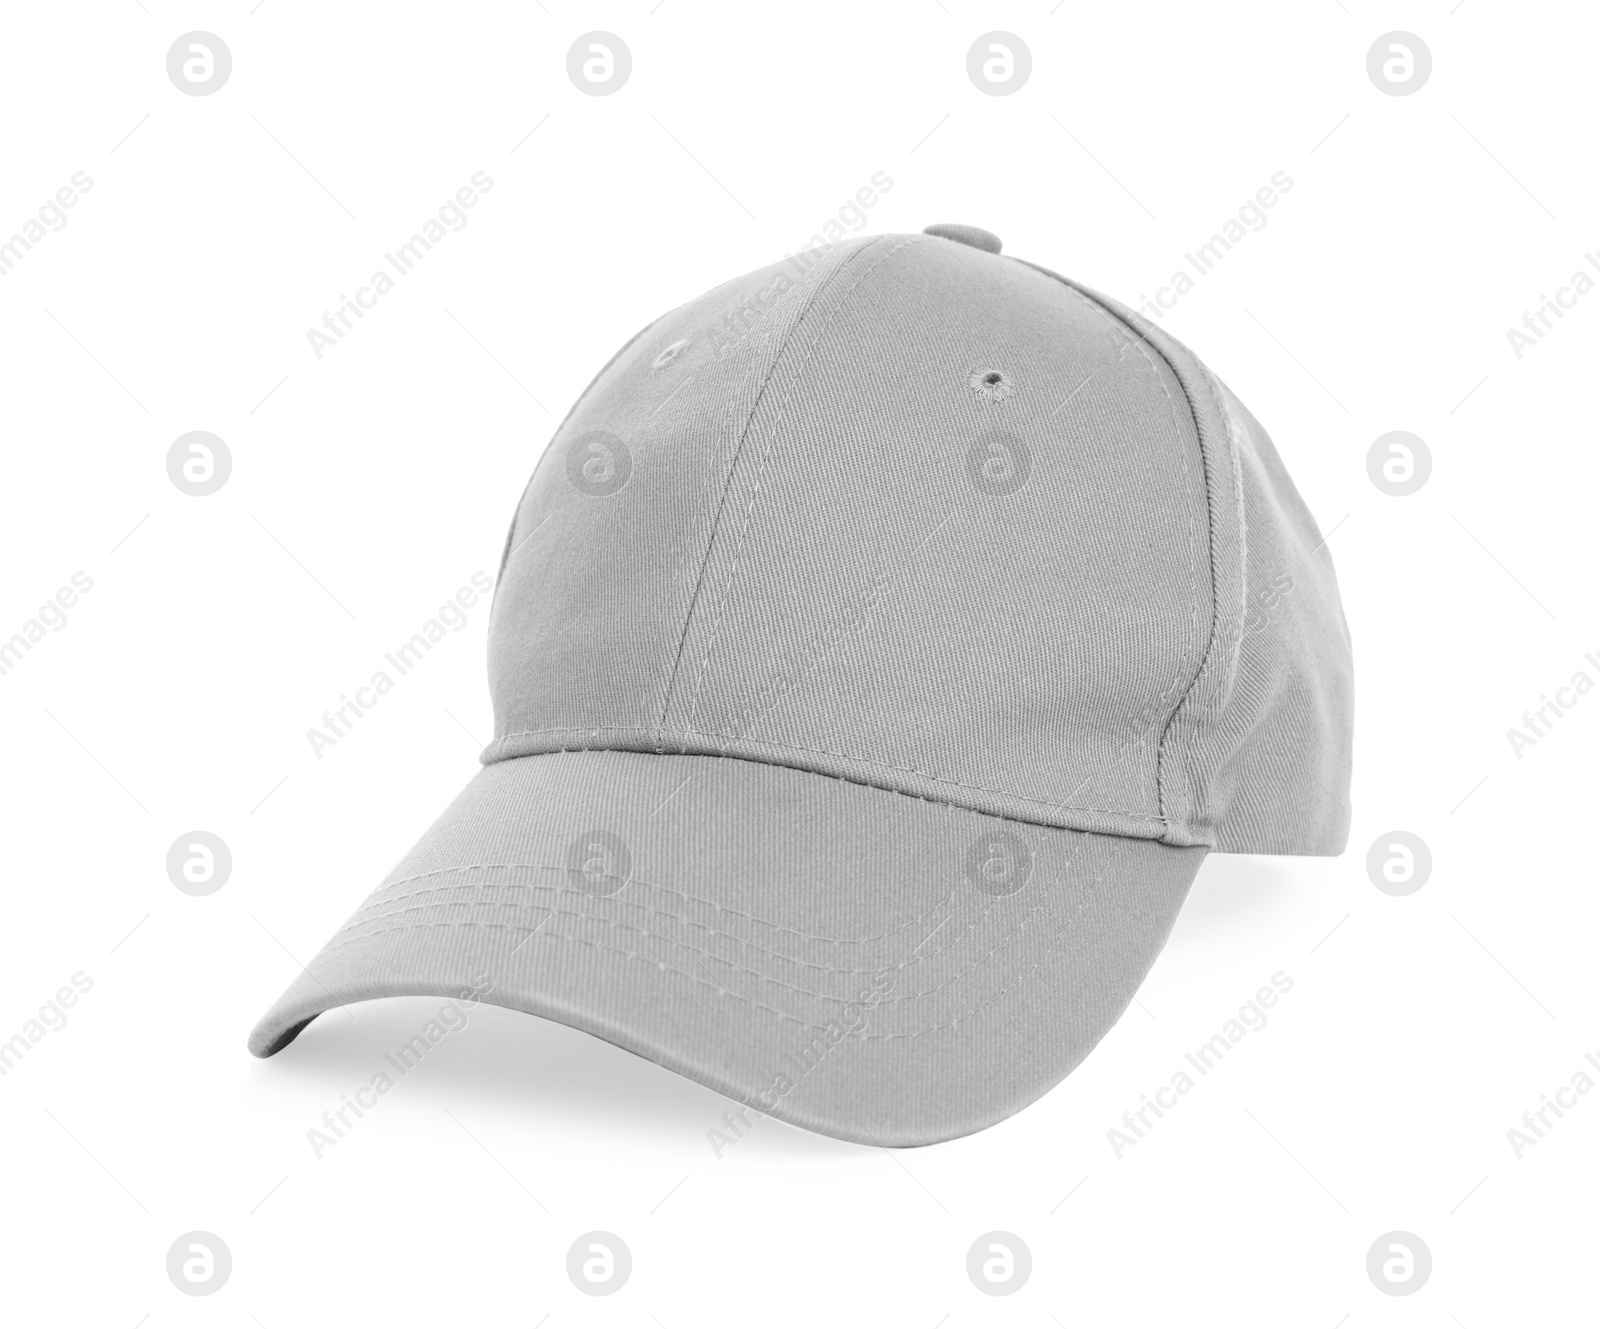 Photo of Stylish grey baseball cap isolated on white